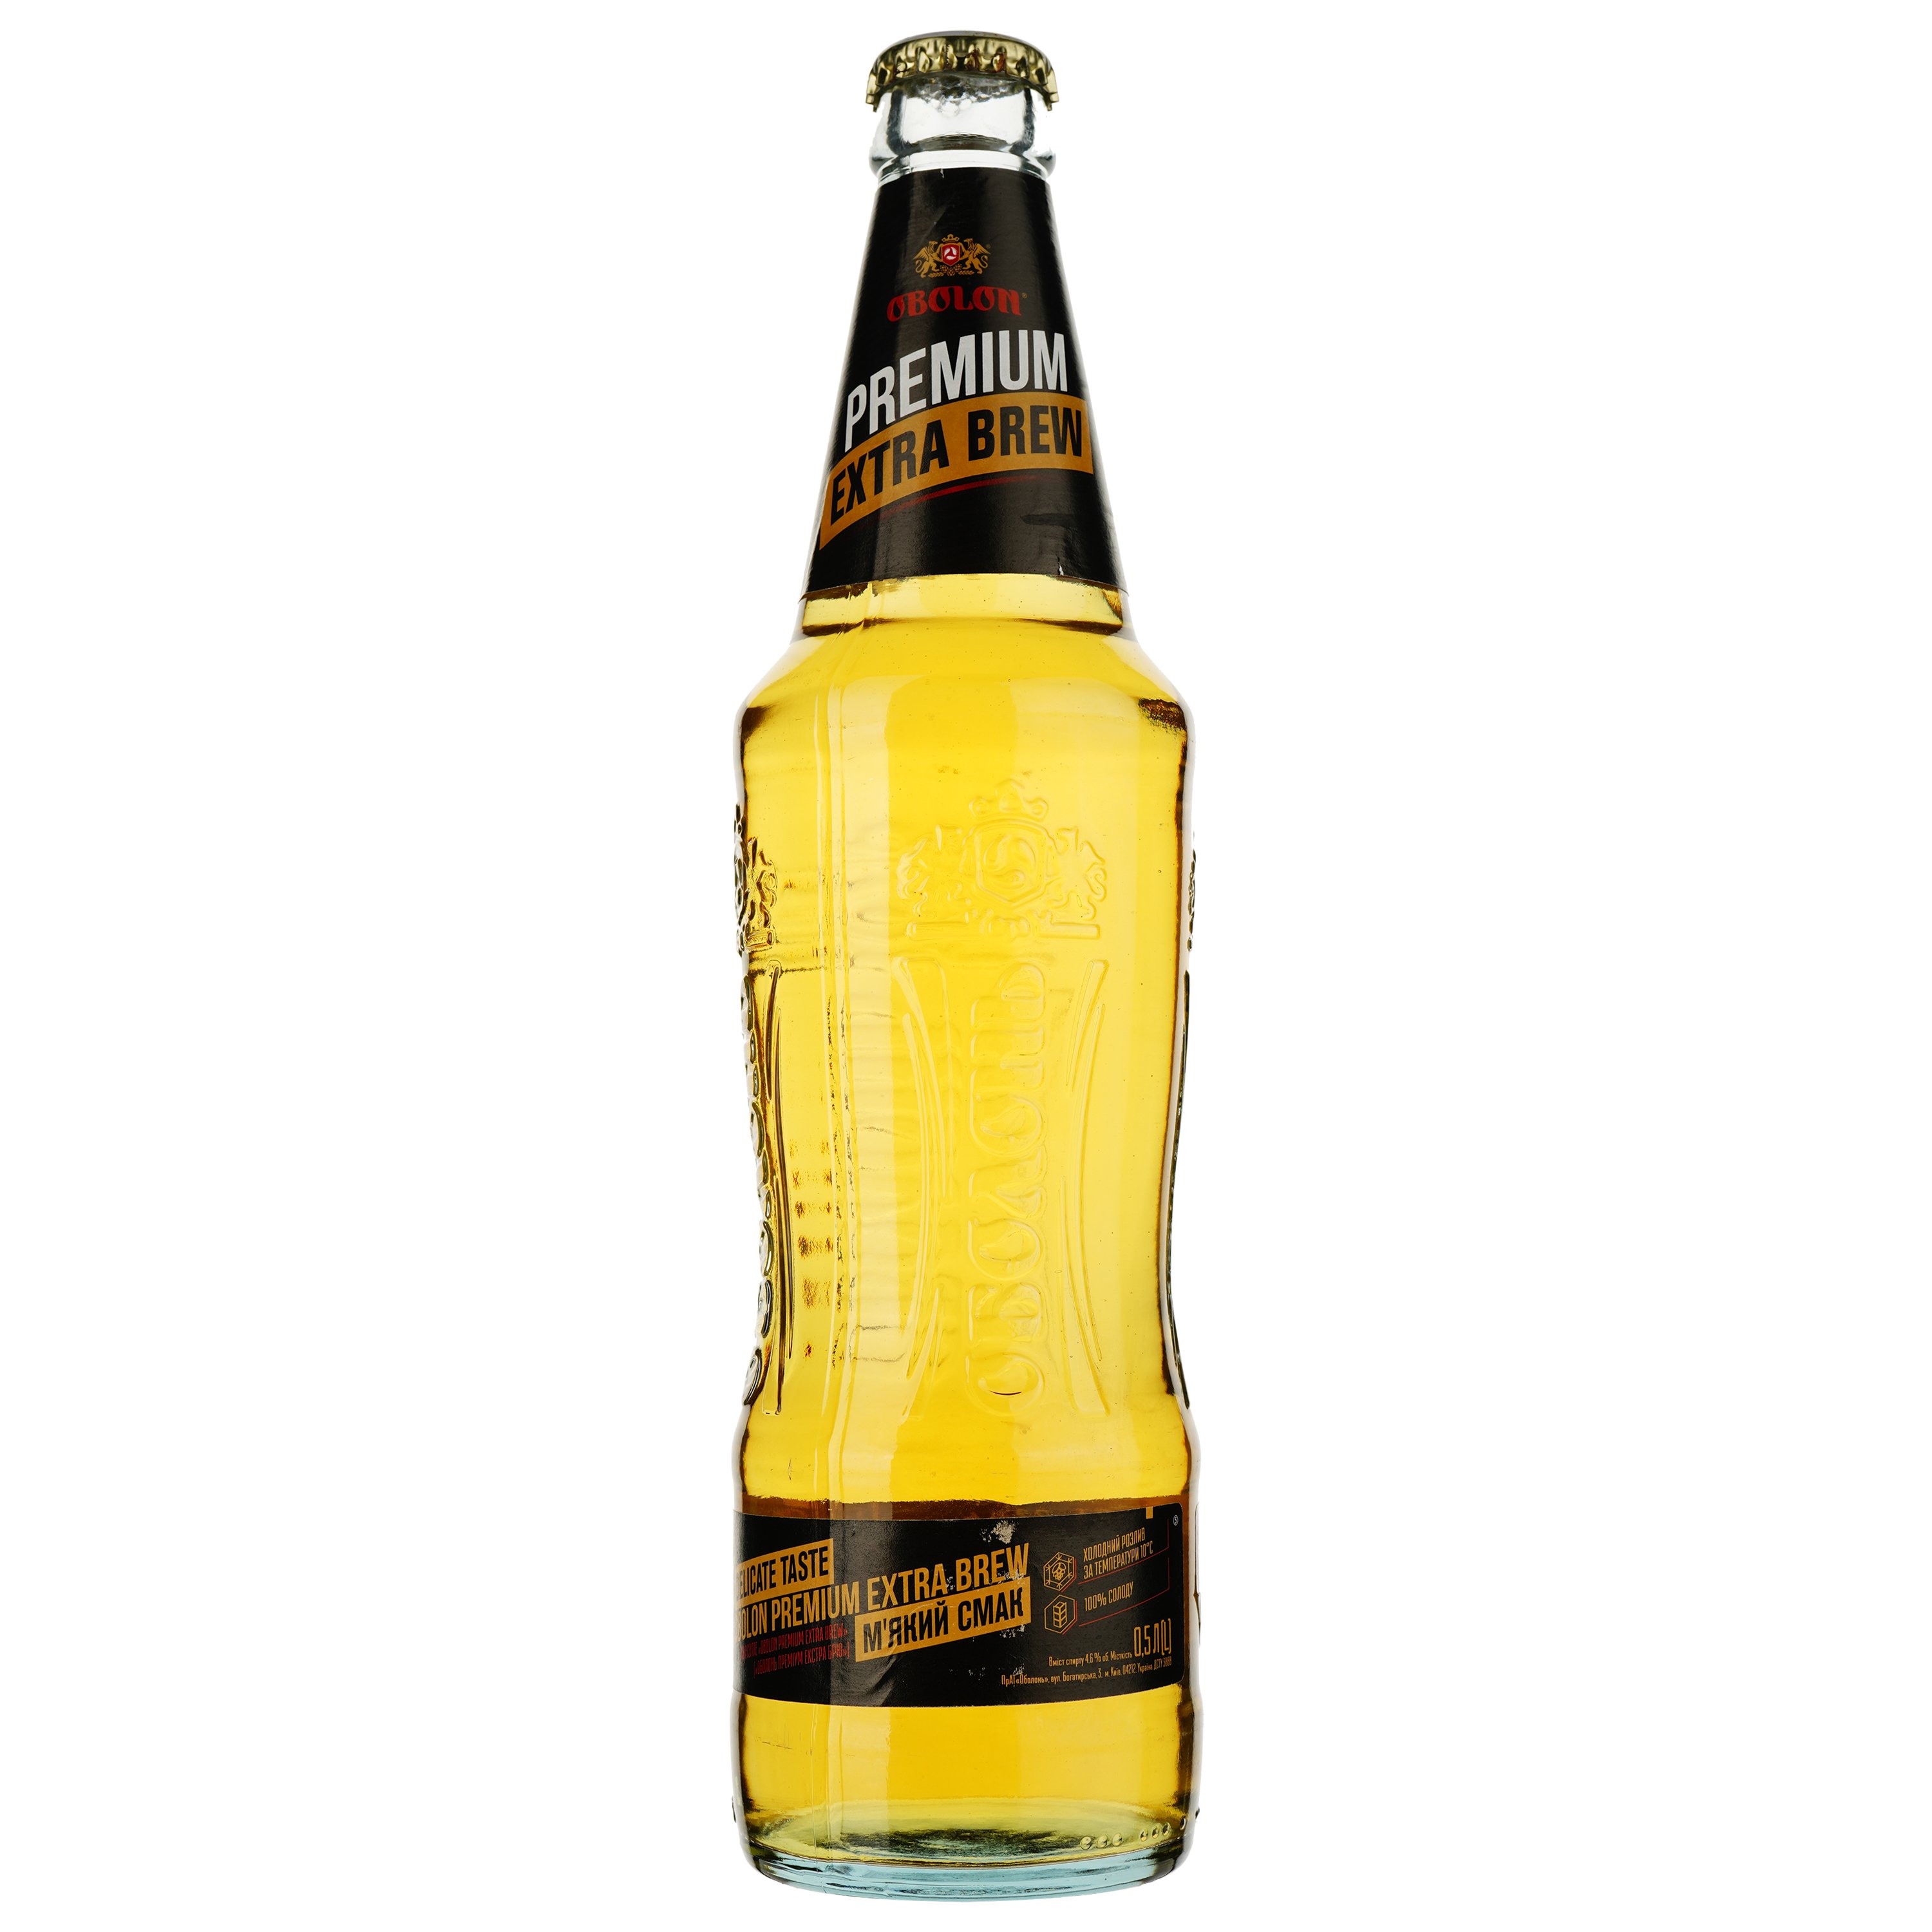 Пиво Оболонь Premium Extra Brew, светлое, фильтрованное, 4,6%, 0,5 л (781554) - фото 1